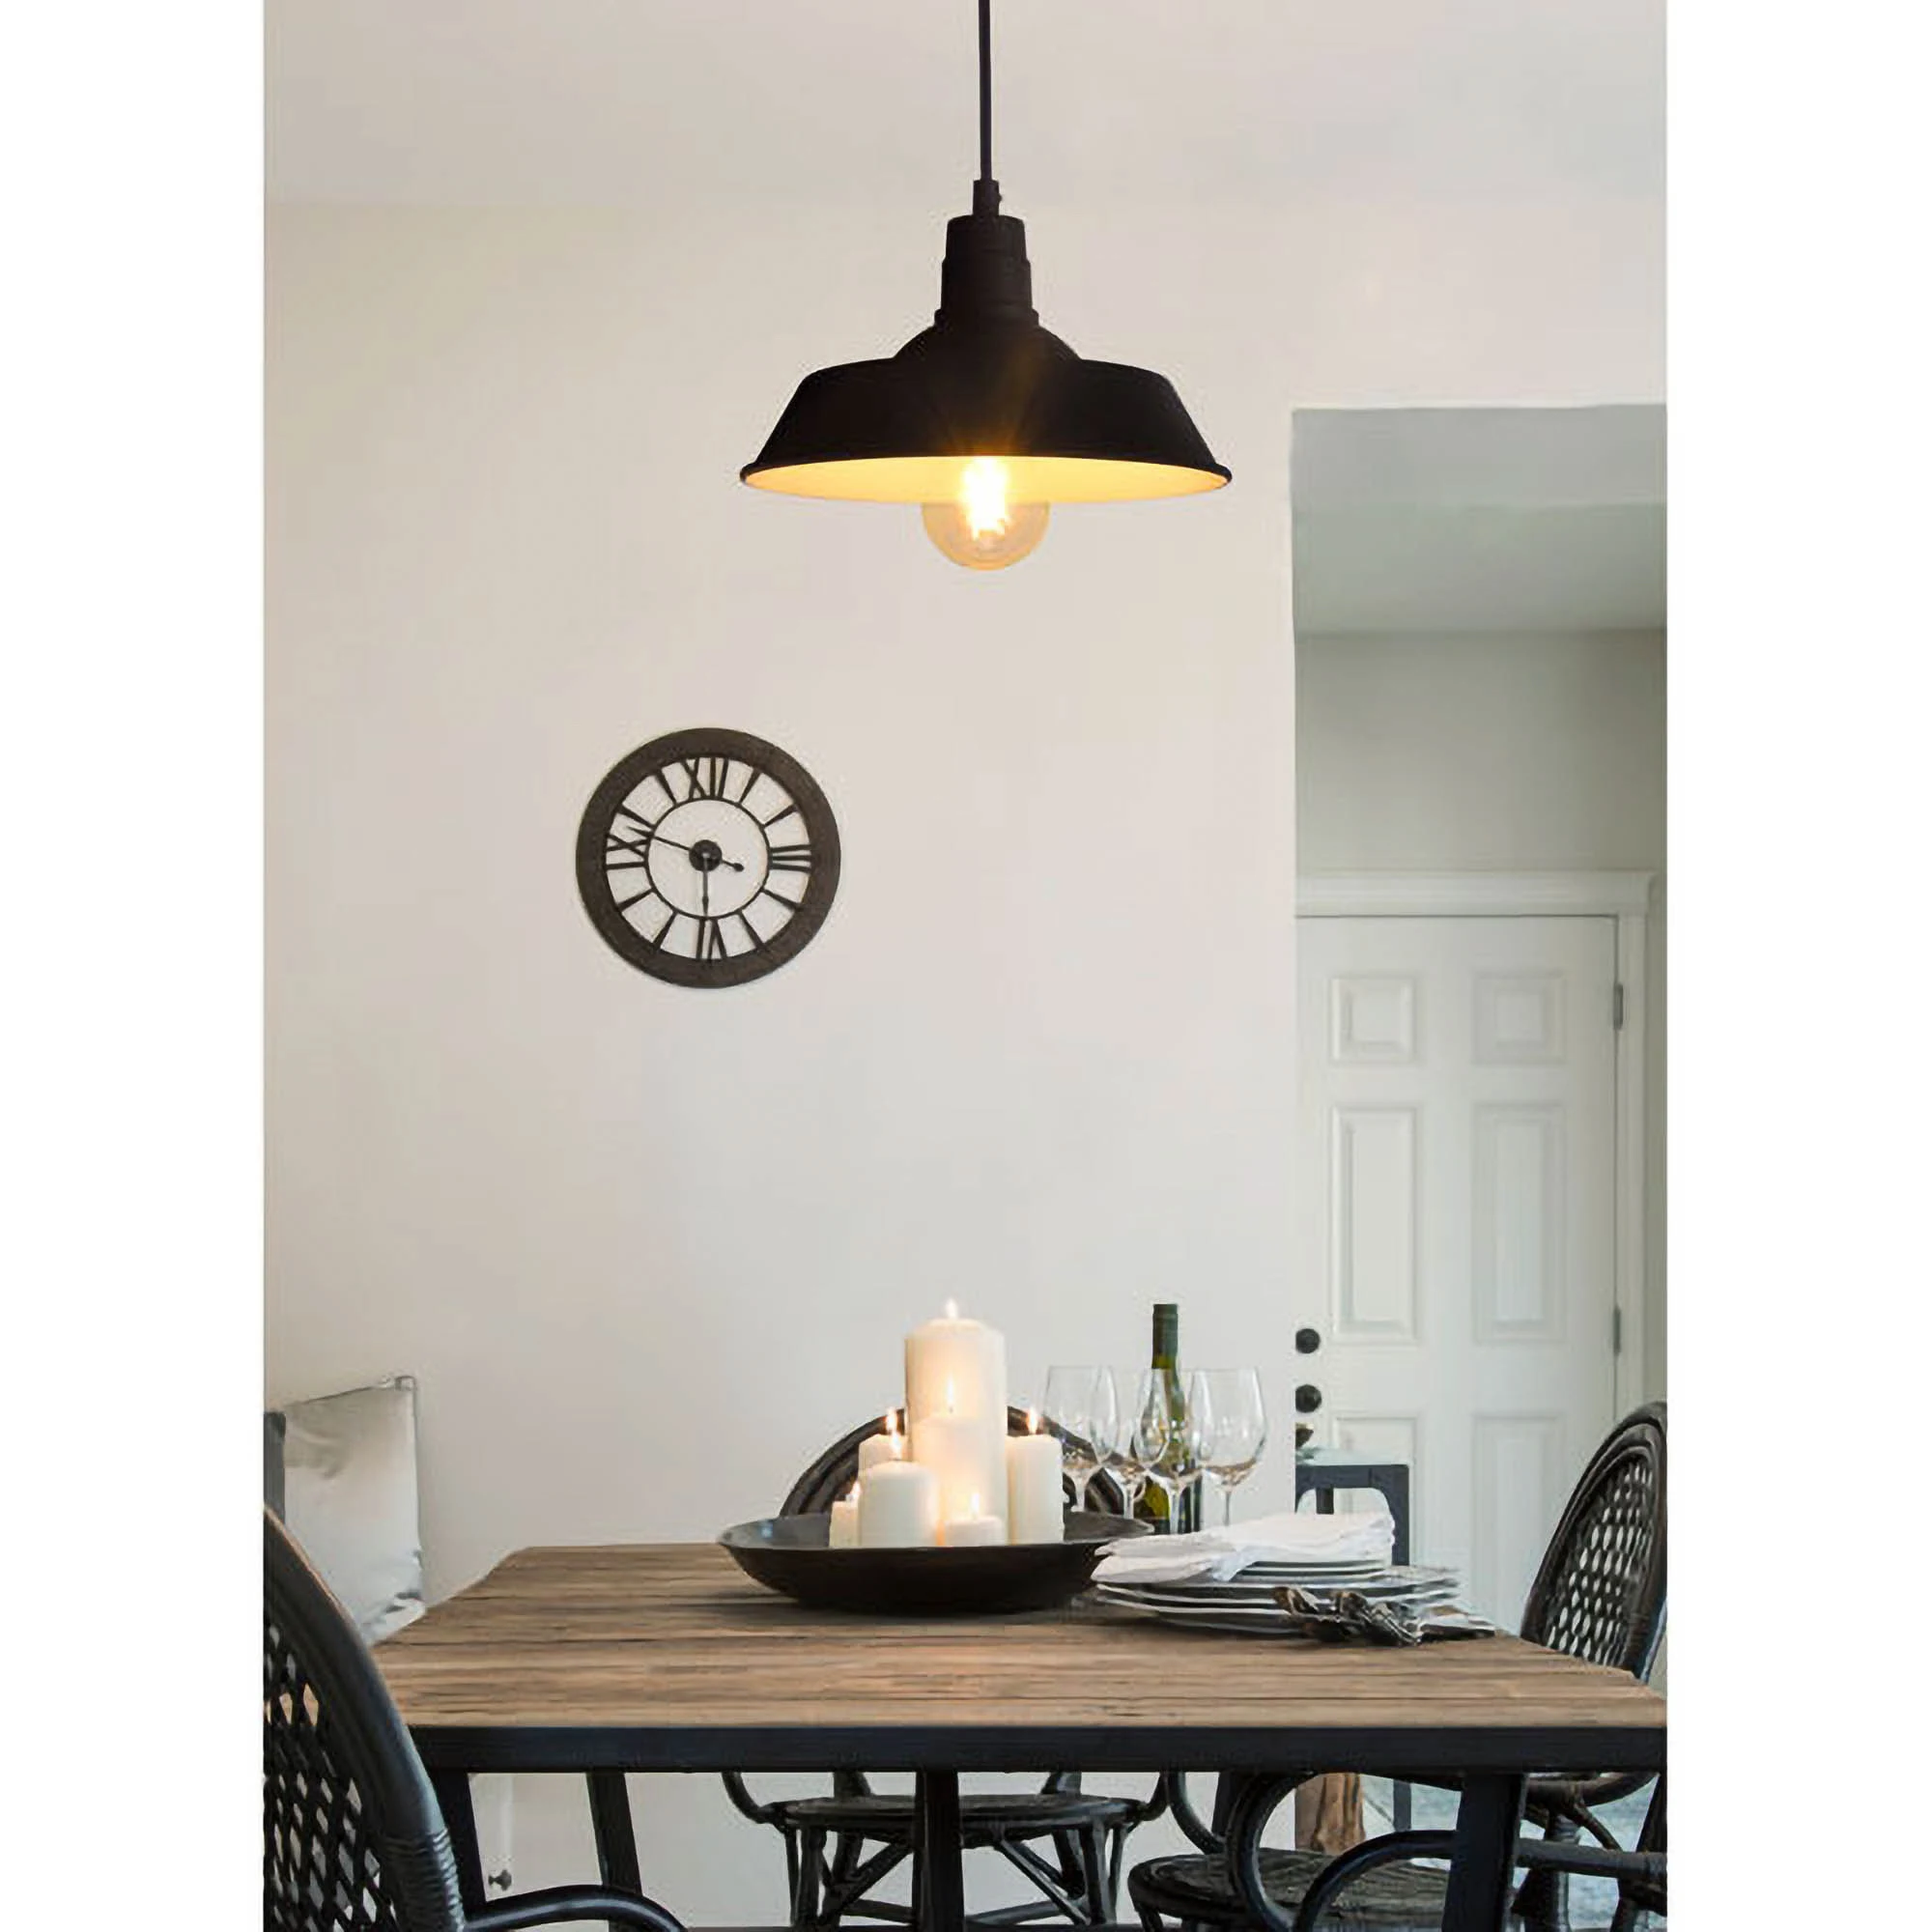 Скандинавская промышленная светодиодная Подвесная лампа, домашний декор, комнатное освещение, современный минималистичный подвесной светильник, Лидер продаж